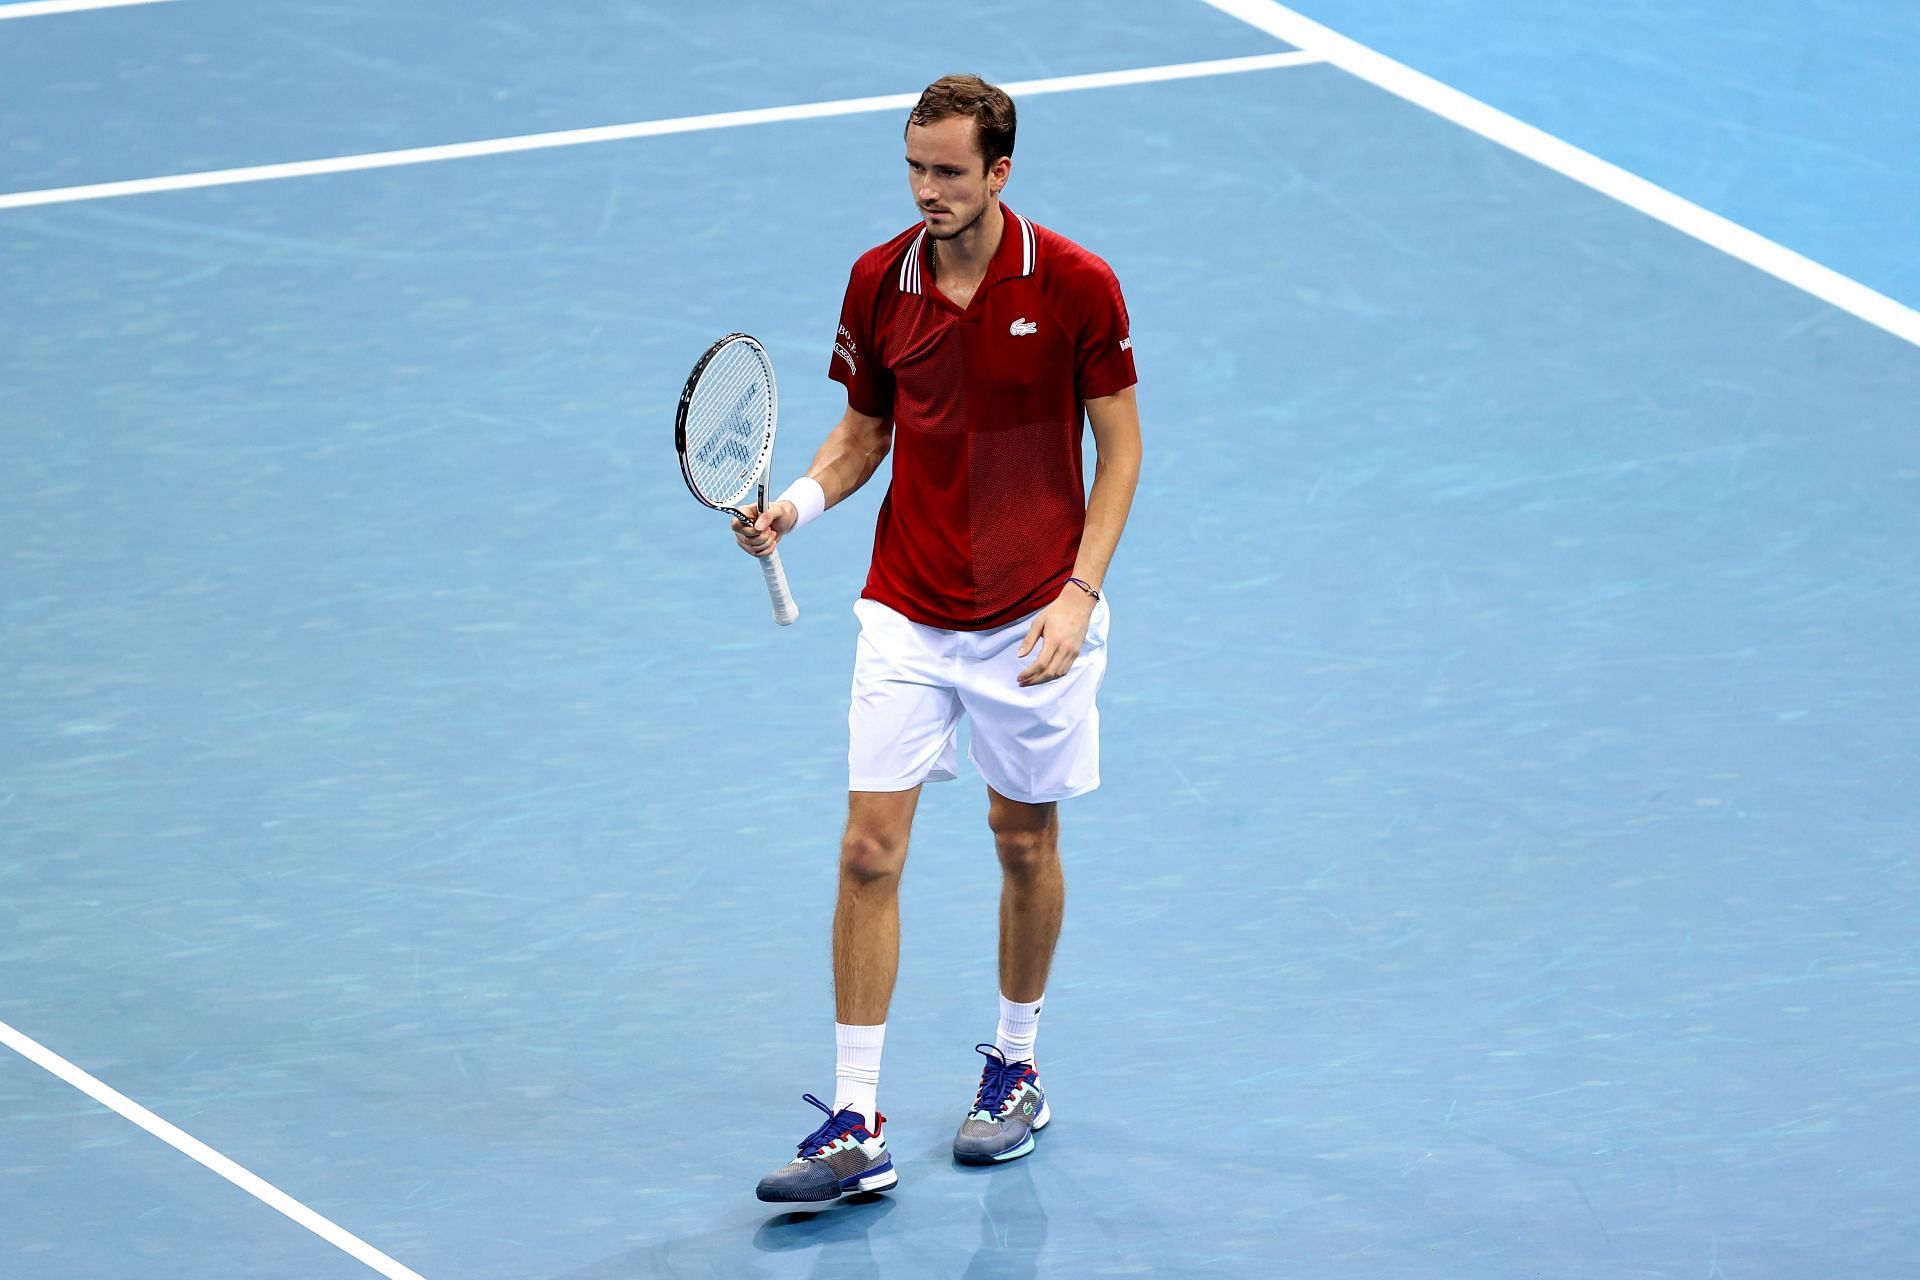 Daniil Medvedev scored victories against Alex de Minaur and Matteo Berrettini in the ATP Cup 2022